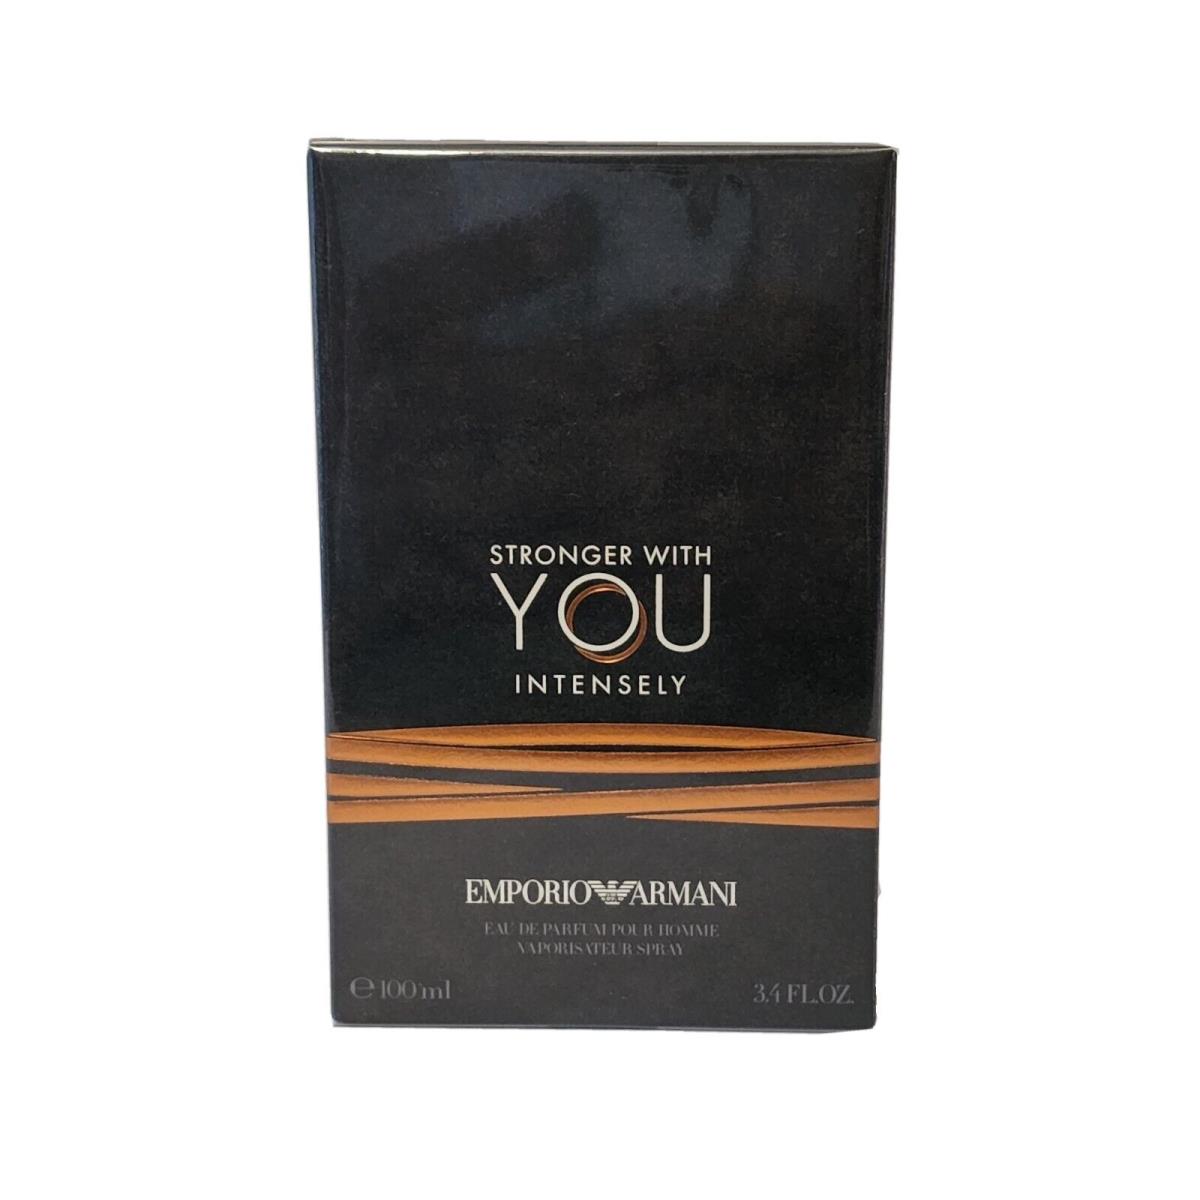 Emporio Armani Stronger with You Intensely 3.4OZ Eau DE Parfum Spray For Men